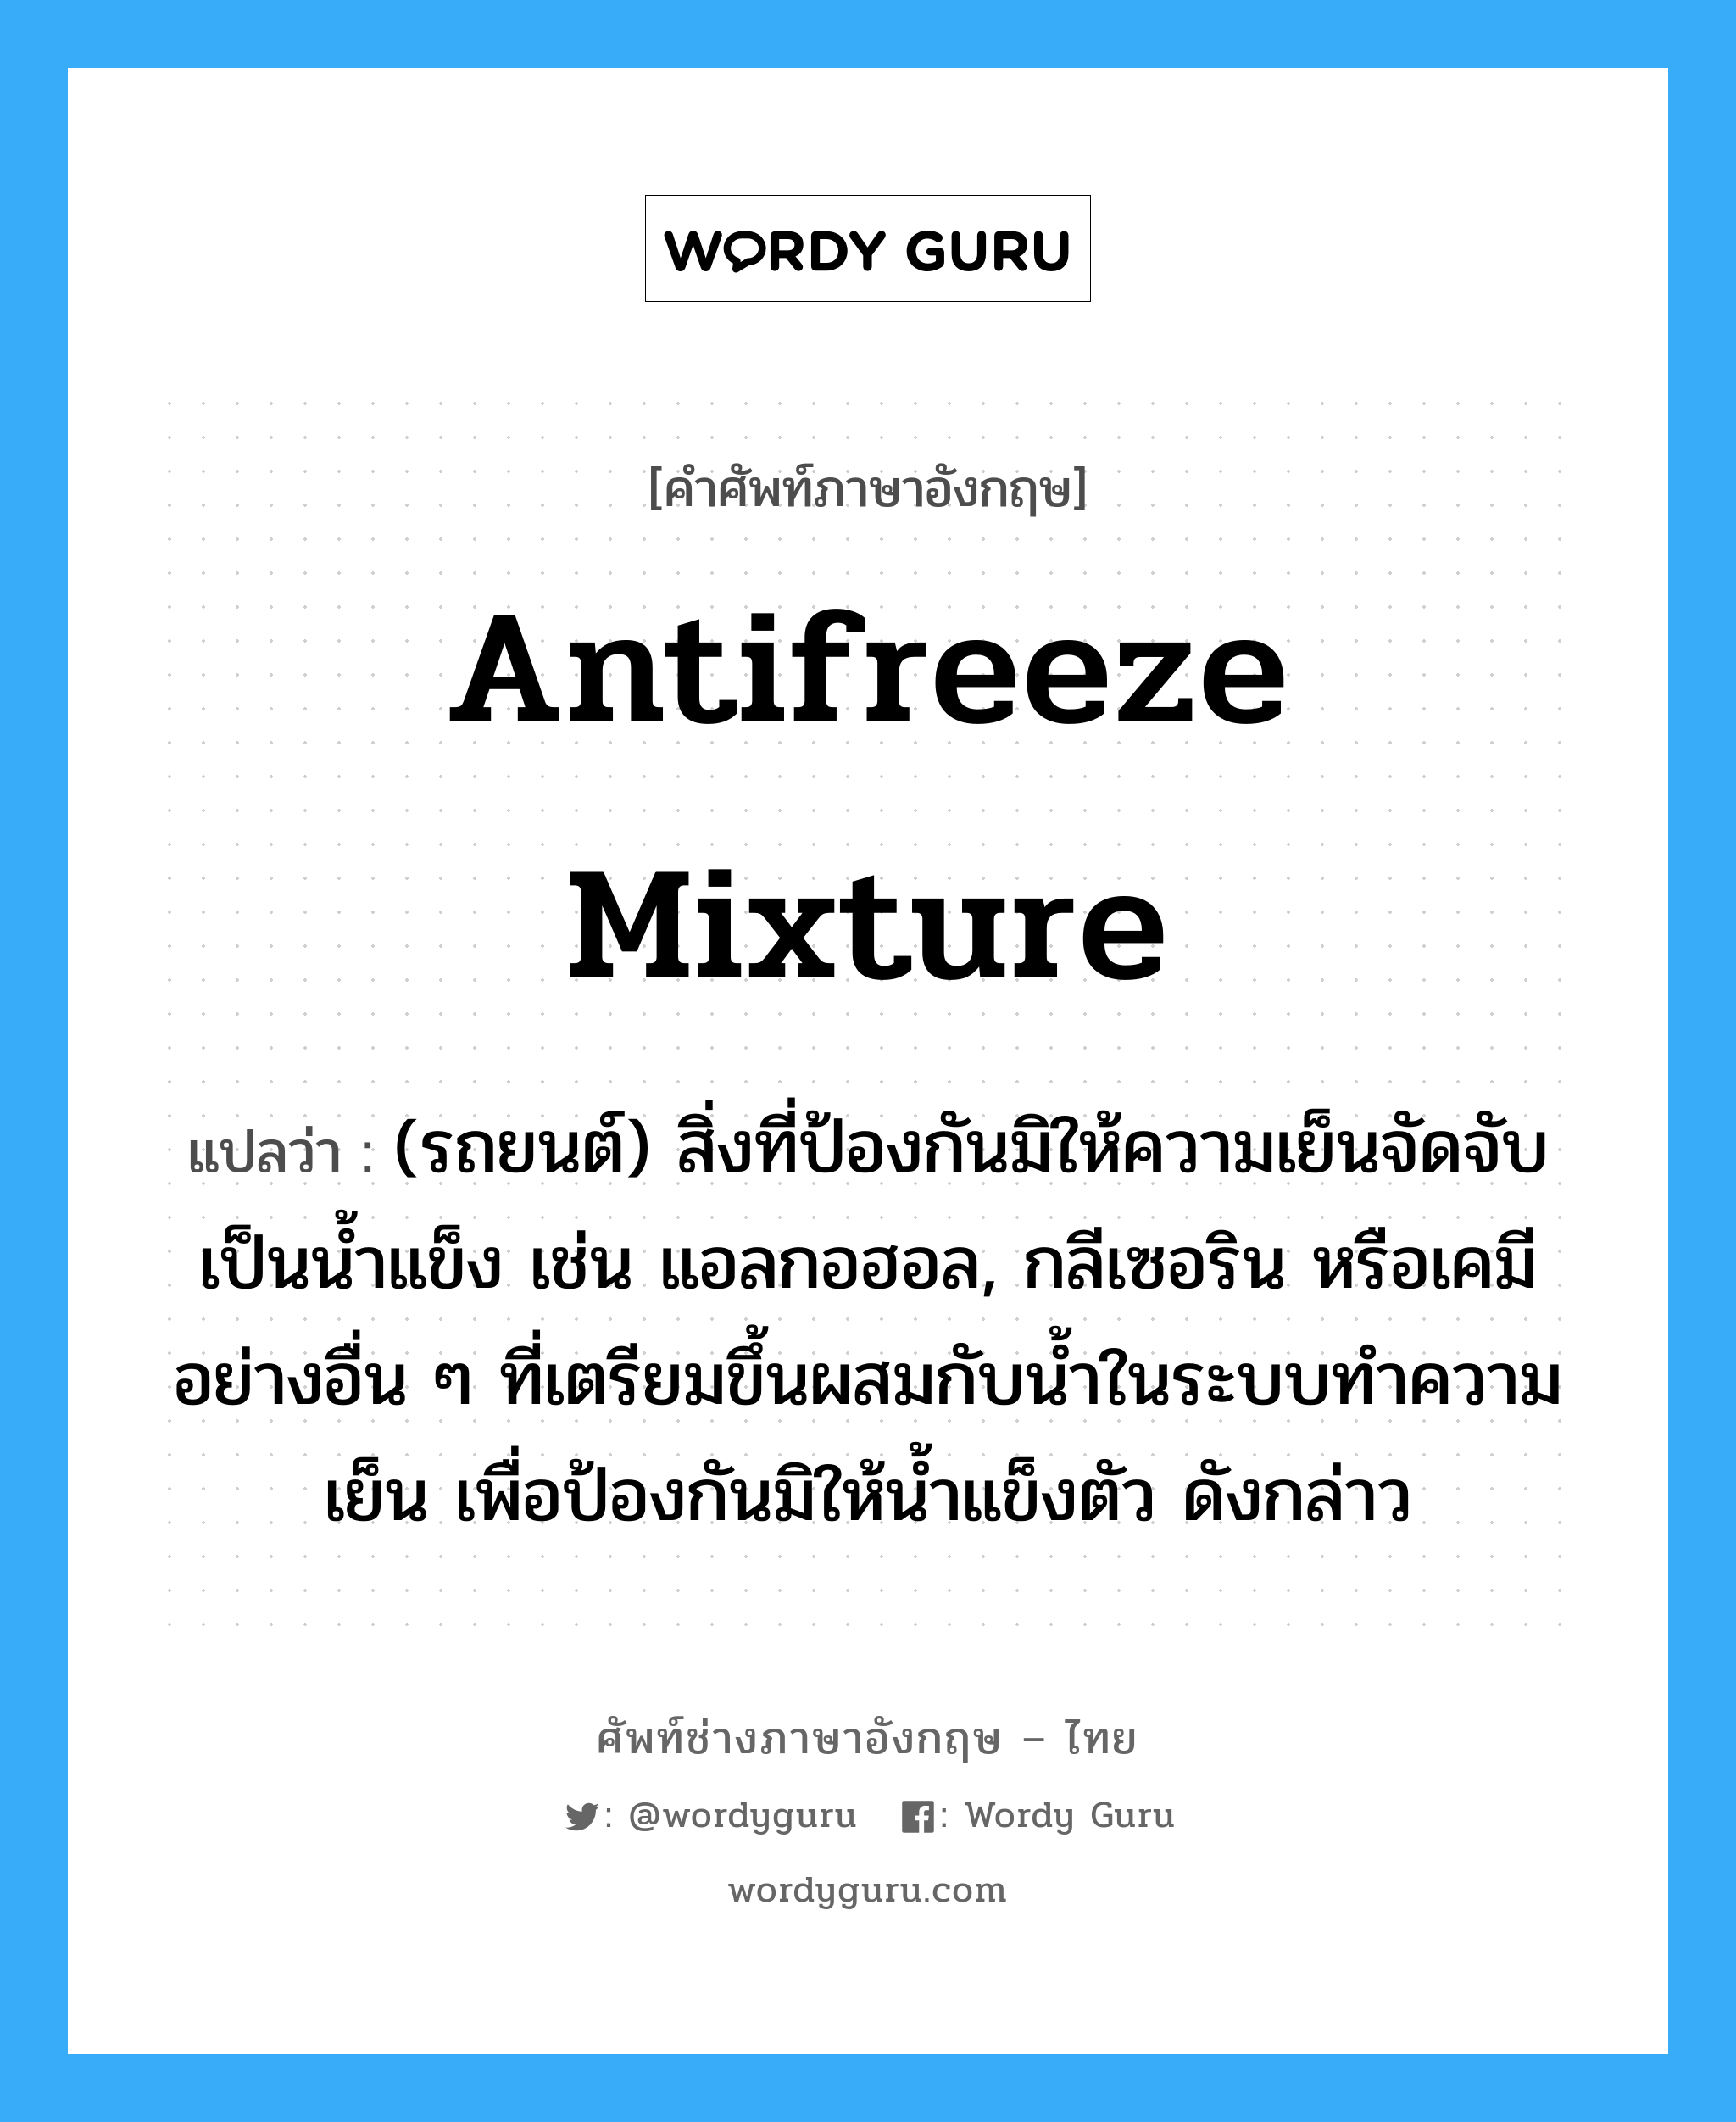 antifreeze mixture แปลว่า?, คำศัพท์ช่างภาษาอังกฤษ - ไทย antifreeze mixture คำศัพท์ภาษาอังกฤษ antifreeze mixture แปลว่า (รถยนต์) สิ่งที่ป้องกันมิให้ความเย็นจัดจับเป็นน้ำแข็ง เช่น แอลกอฮอล, กลีเซอริน หรือเคมีอย่างอื่น ๆ ที่เตรียมขึ้นผสมกับน้ำในระบบทำความเย็น เพื่อป้องกันมิให้น้ำแข็งตัว ดังกล่าว